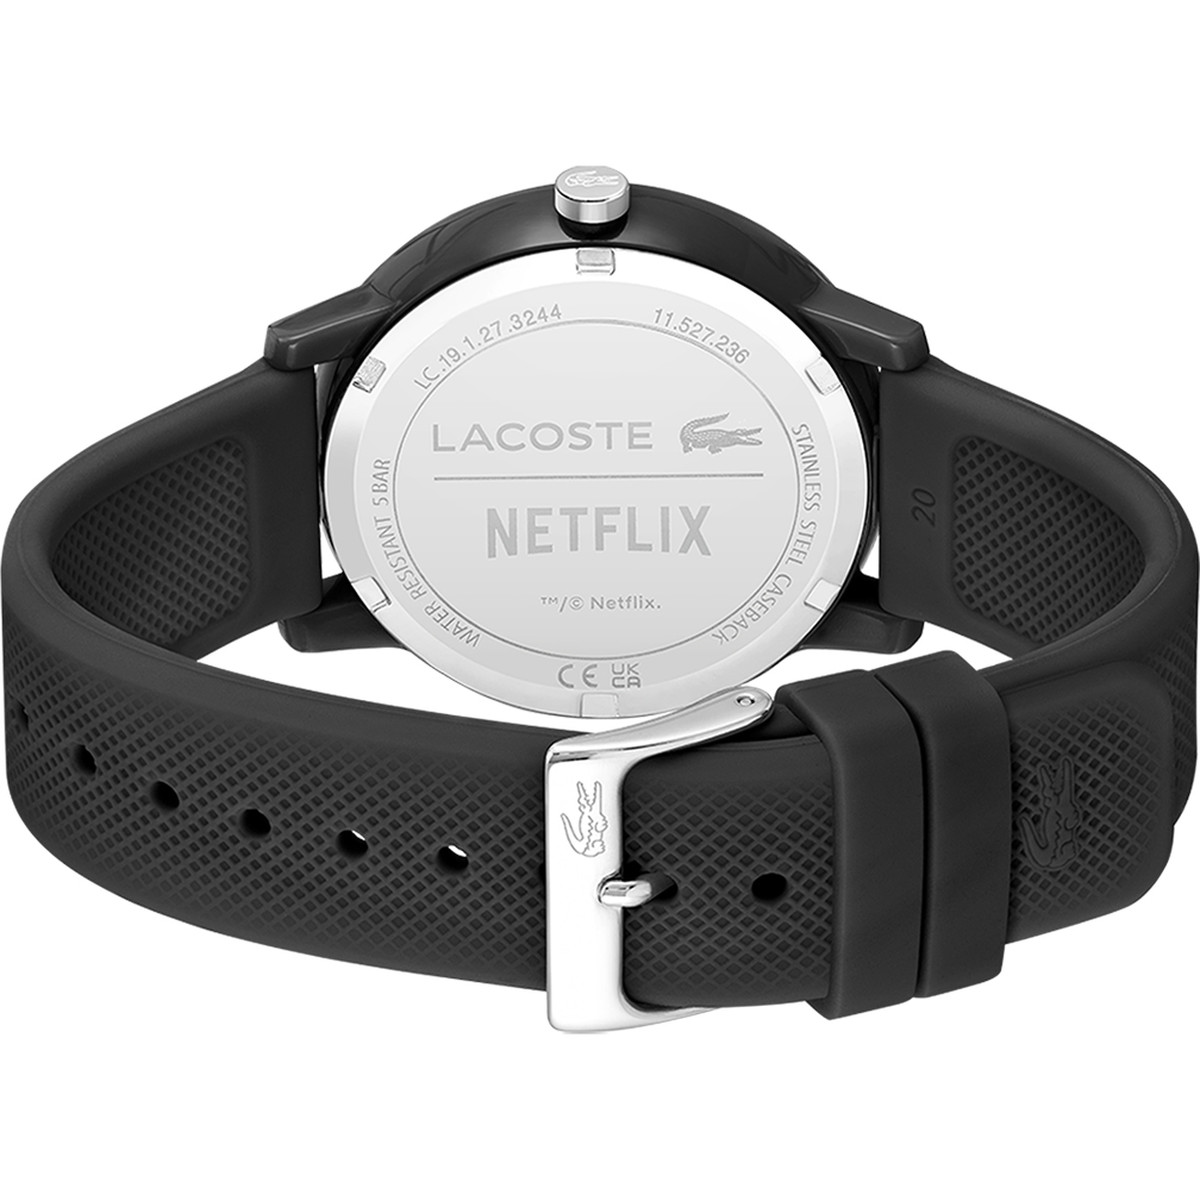 Montre Lacoste 12.12 Netflix homme TR90 bracelet silicone noir - vue 3